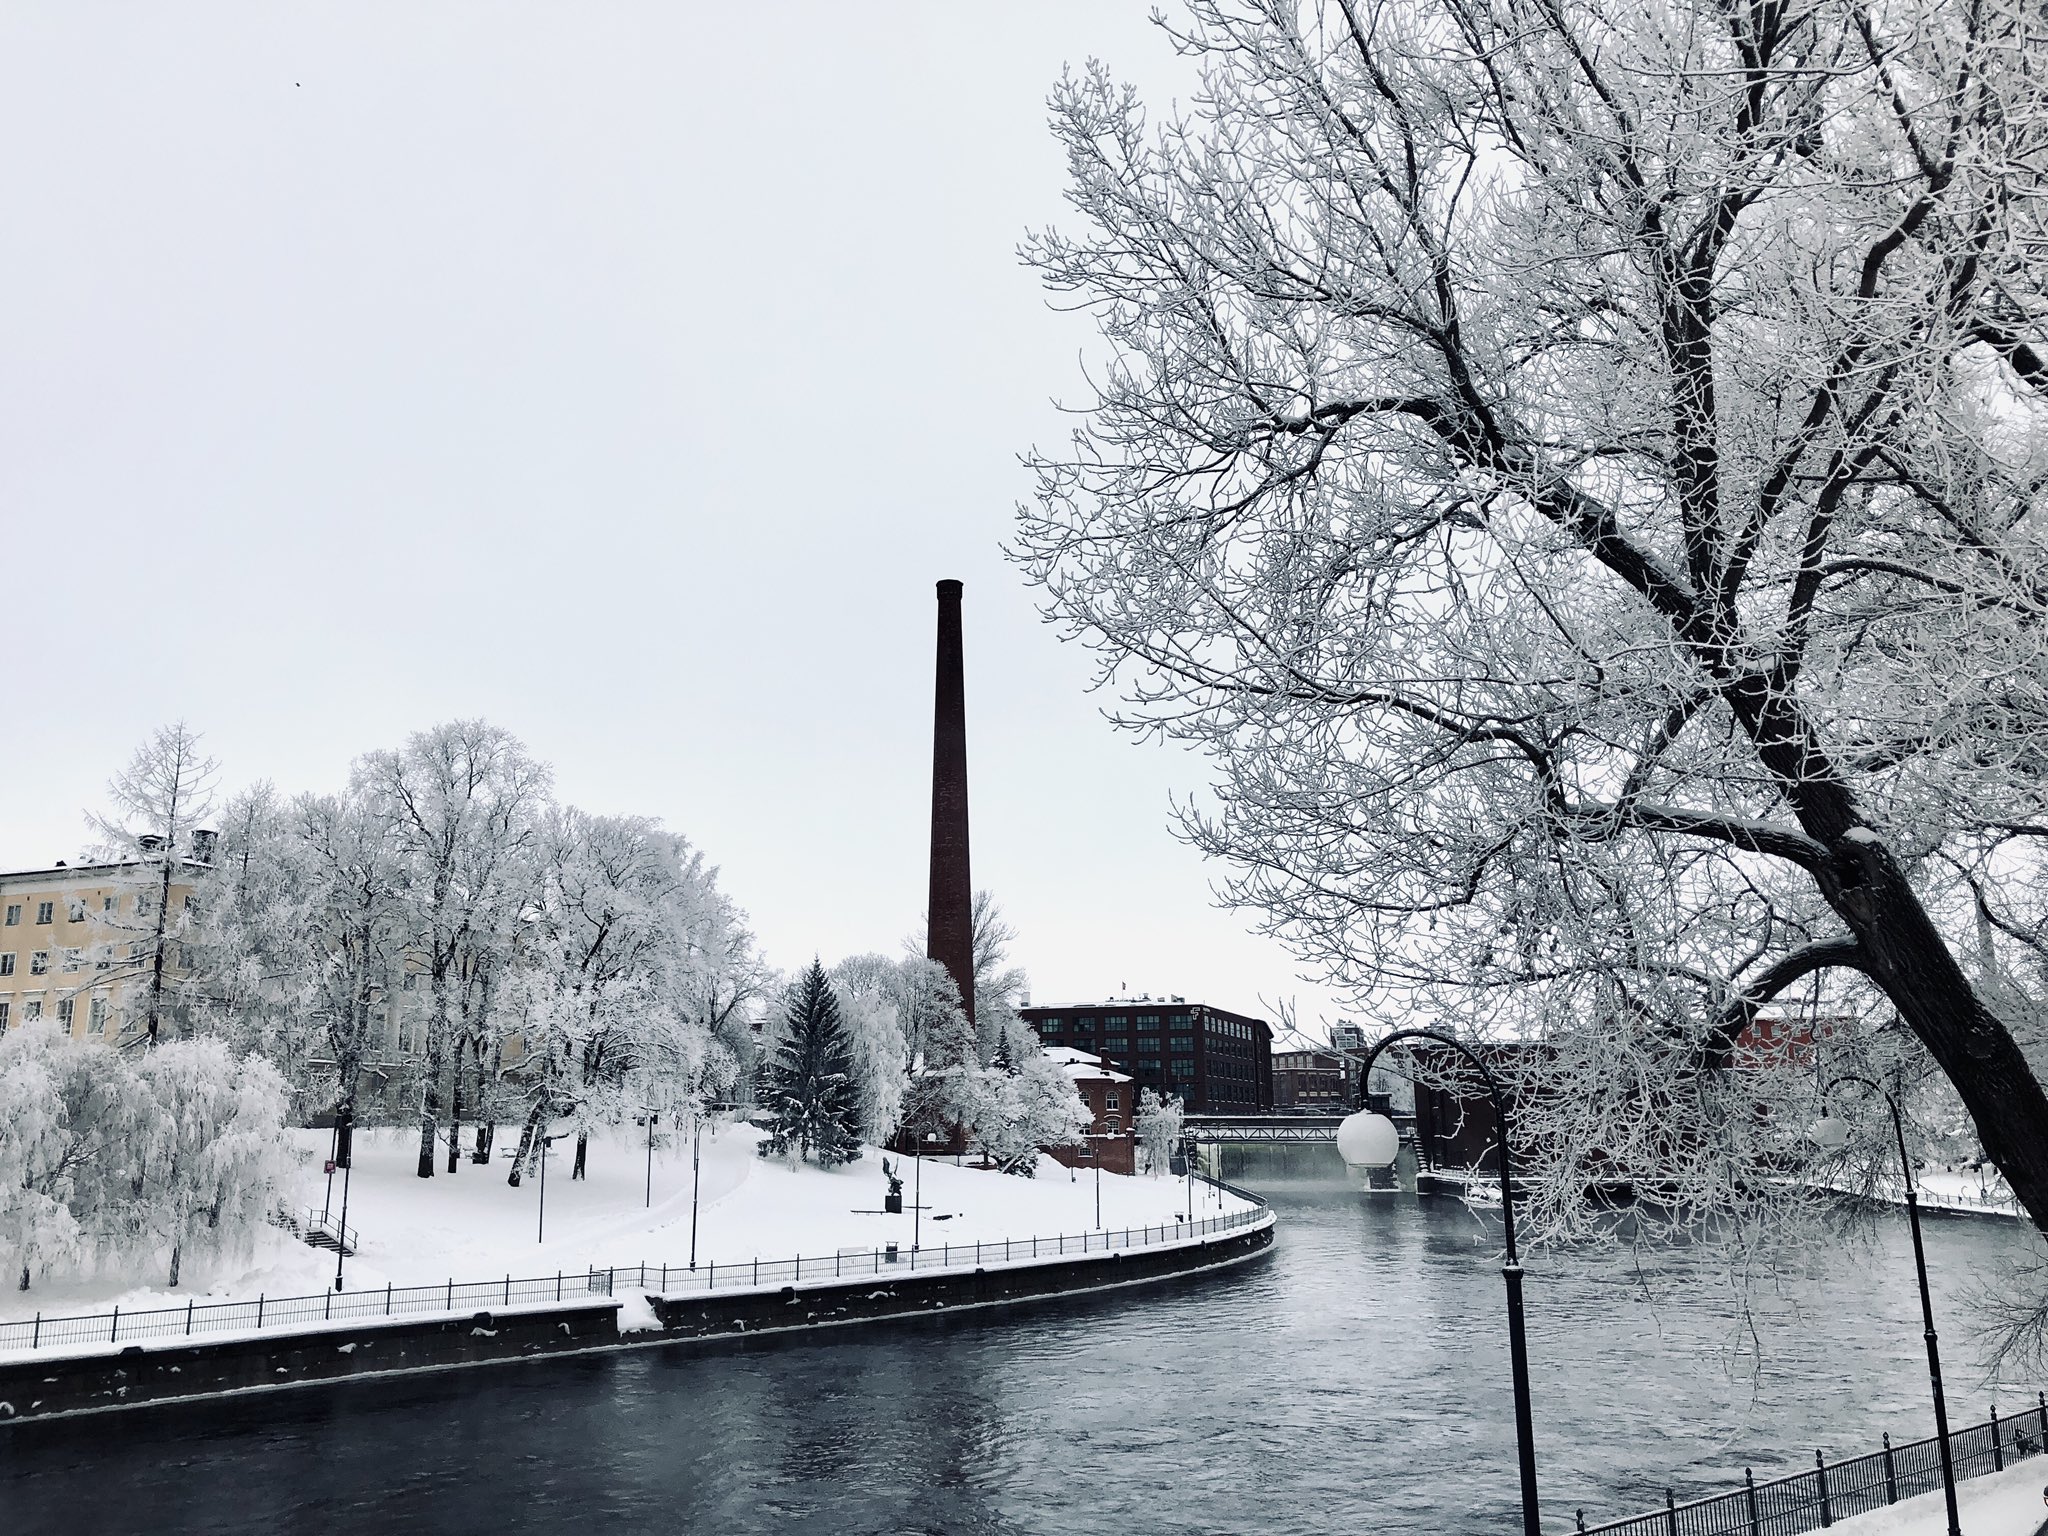 これもリアルなフィンランド フィンランド タンペレ本日の景色 木々が雪で白くなってとてもきれいです フィンランド 風景 雪景色 海外 海外旅行写真見て旅行した気になろう 北欧に行きたい気持ちを満たそう 北欧 ヨーロッパ T Co